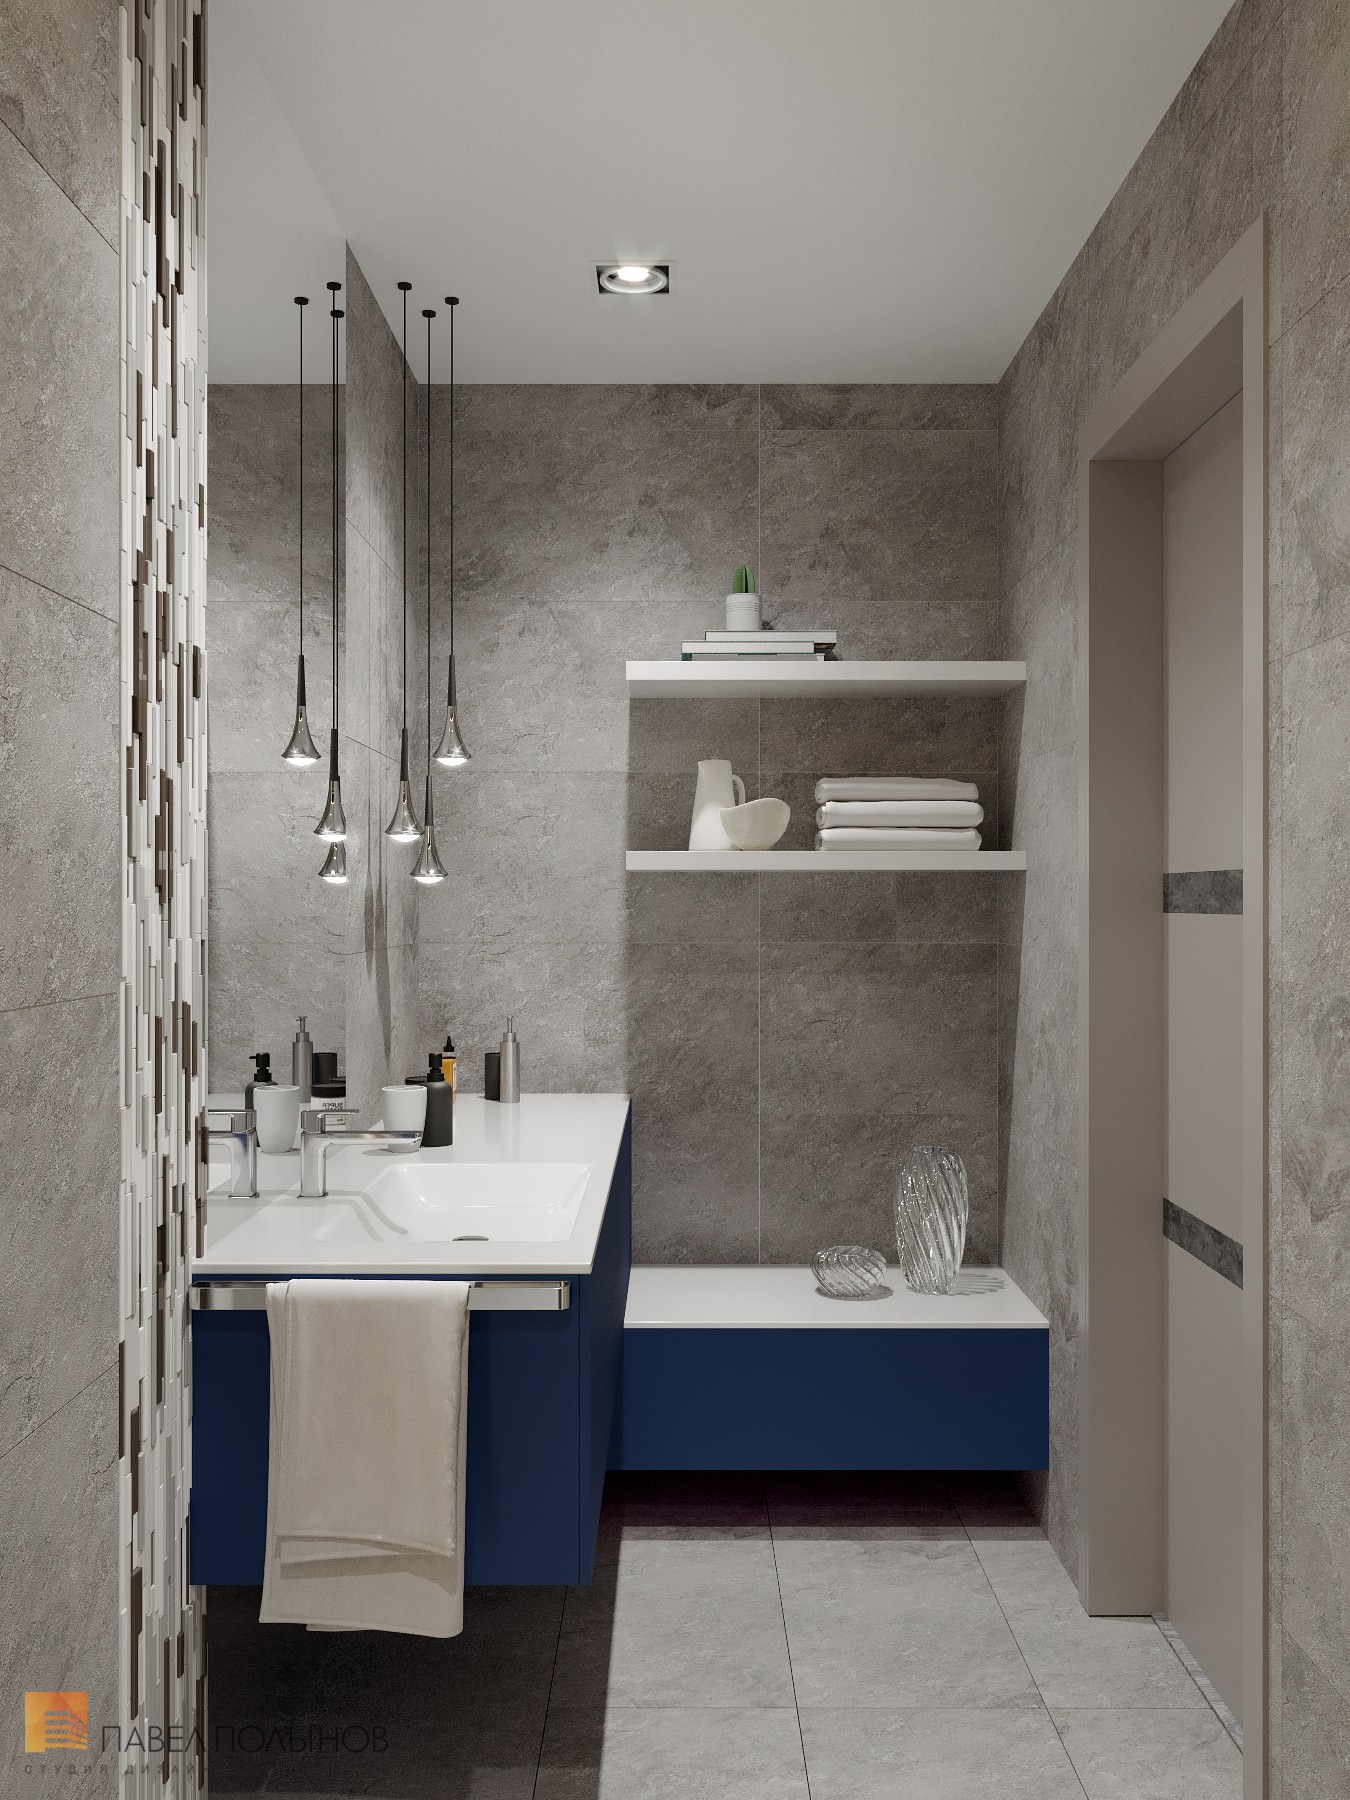 Фото ванная комната из проекта «Дизайн интерьер квартиры в ЖК «Кремлевские звезды», современный стиль, 133 кв.м.»